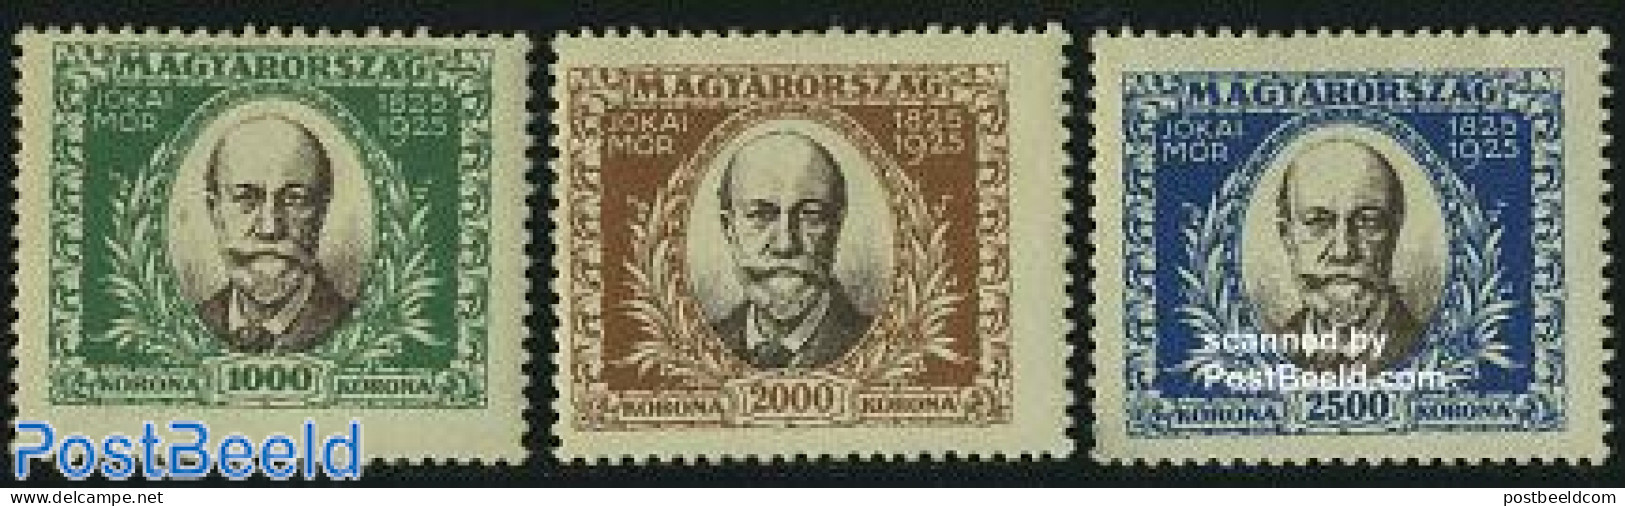 Hungary 1925 M. Jokais Birth Centenary 3v, Unused (hinged), Art - Authors - Ungebraucht